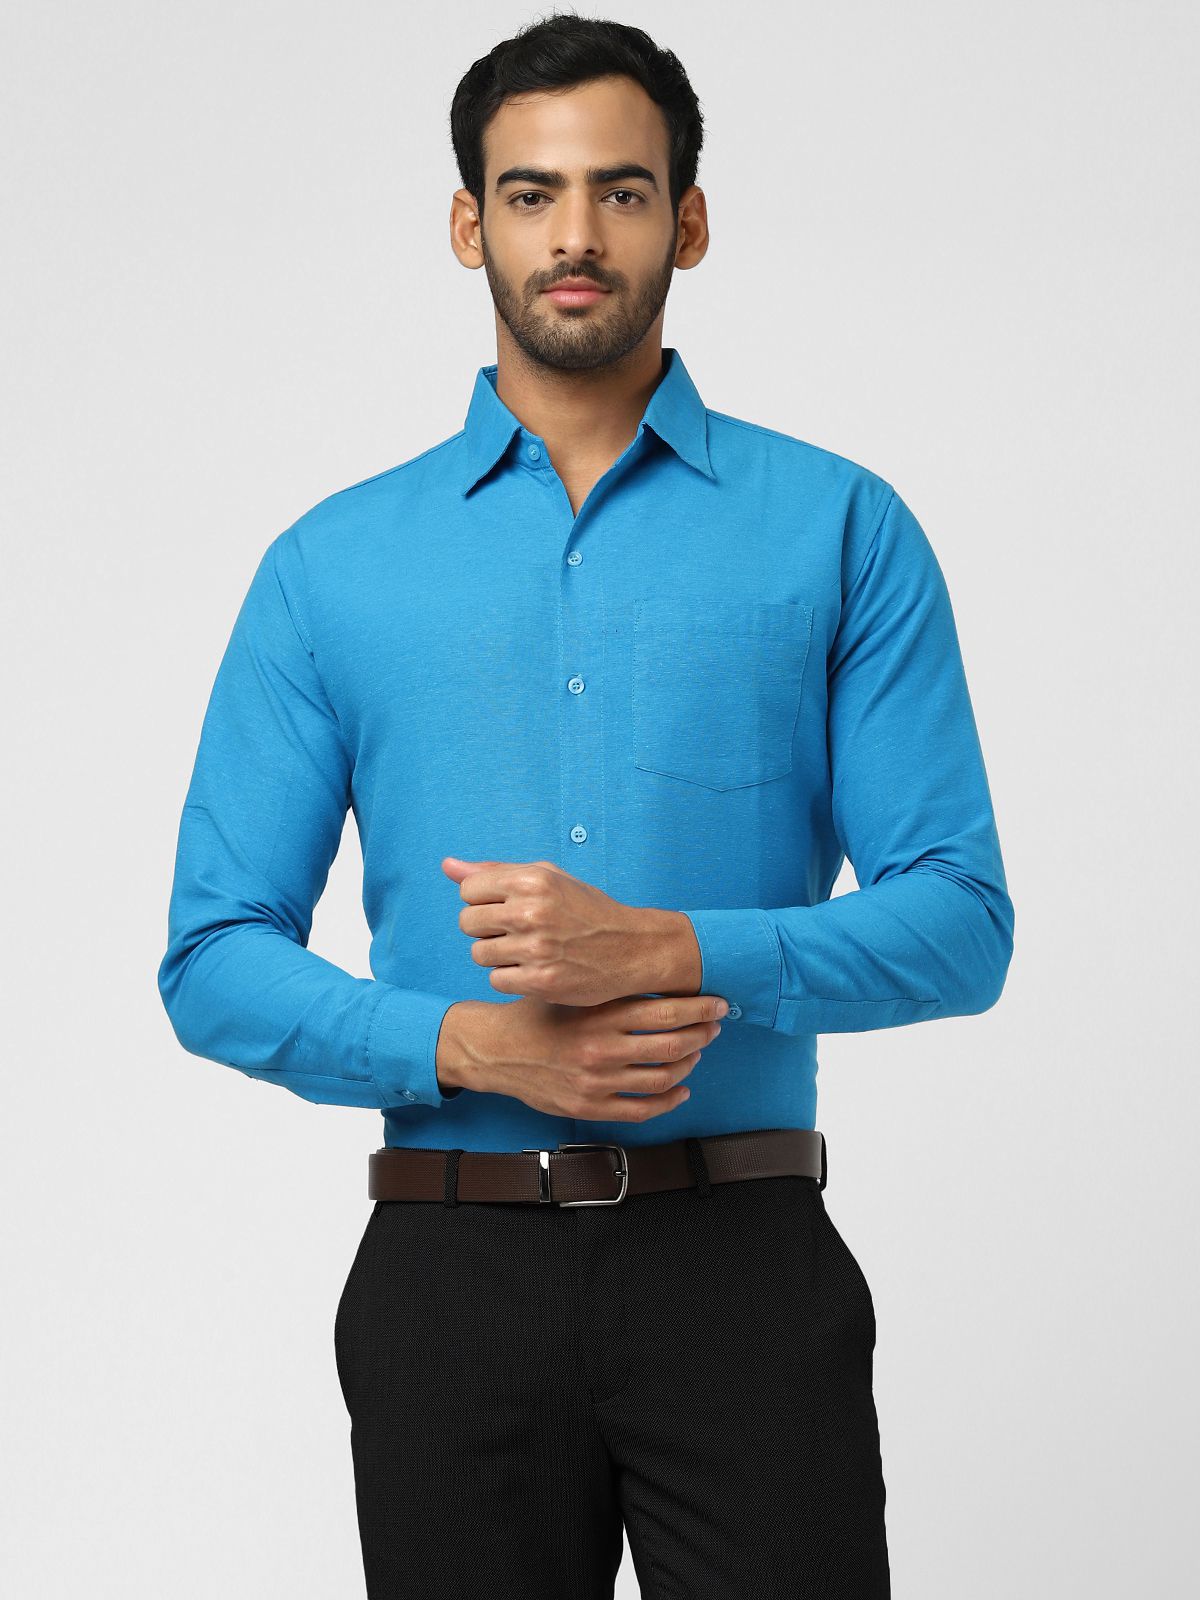     			DESHBANDHU DBK - Blue Cotton Regular Fit Men's Formal Shirt ( Pack of 1 )